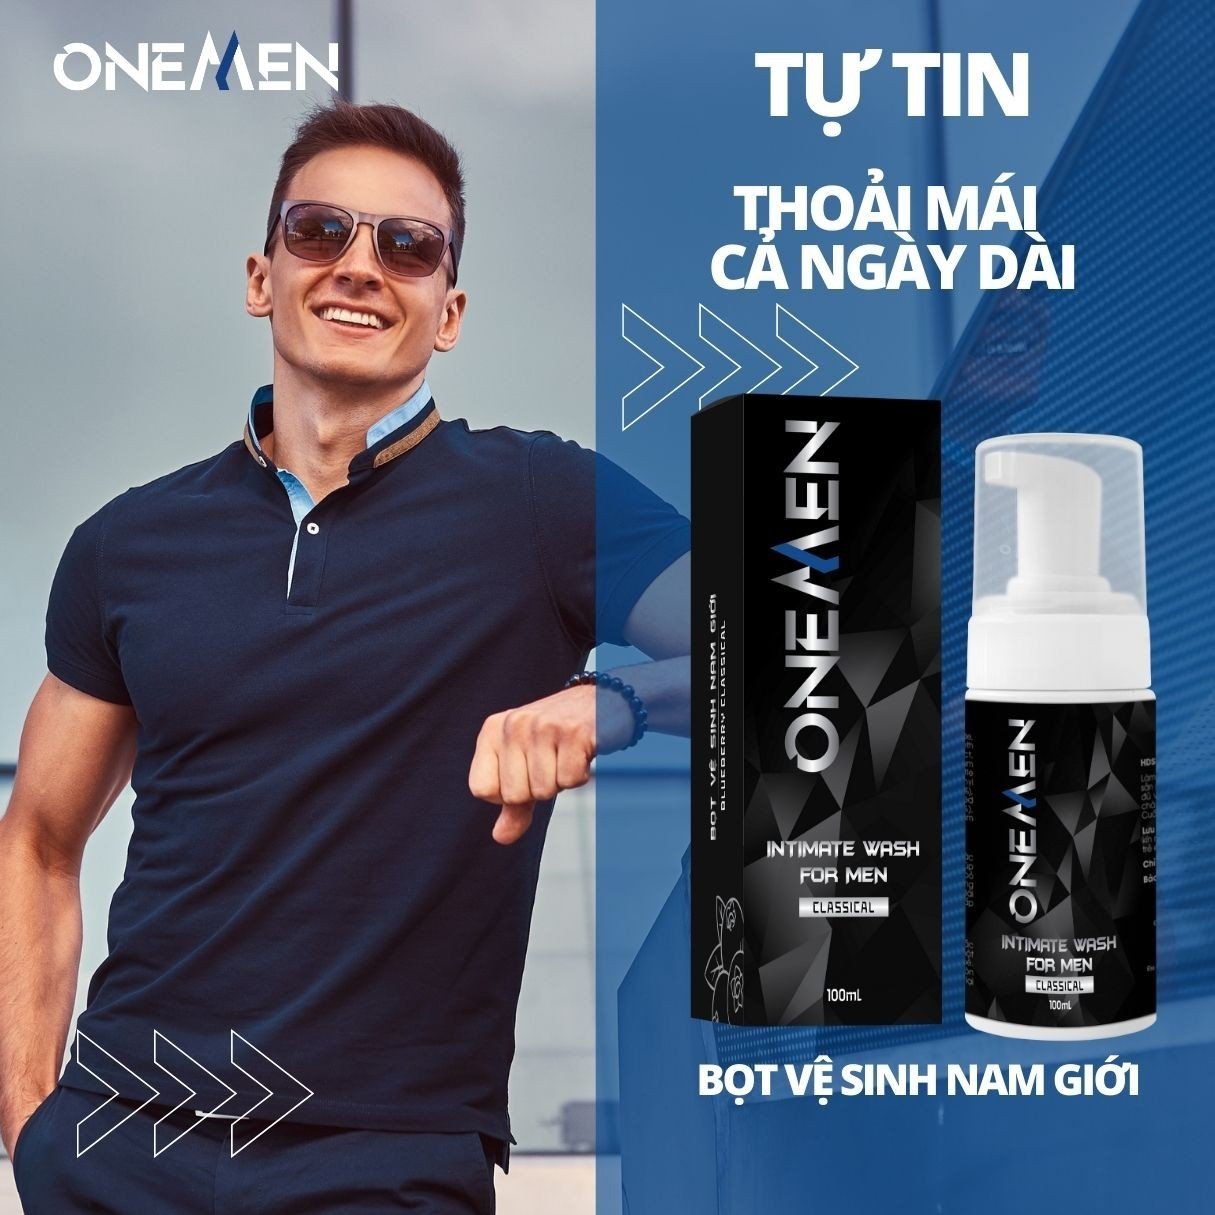 Combo Tiết Kiệm: Bọt Vệ Sinh Nam + Sữa Tắm OneMen TẶNG Nước Hoa Cho Nam Perfume